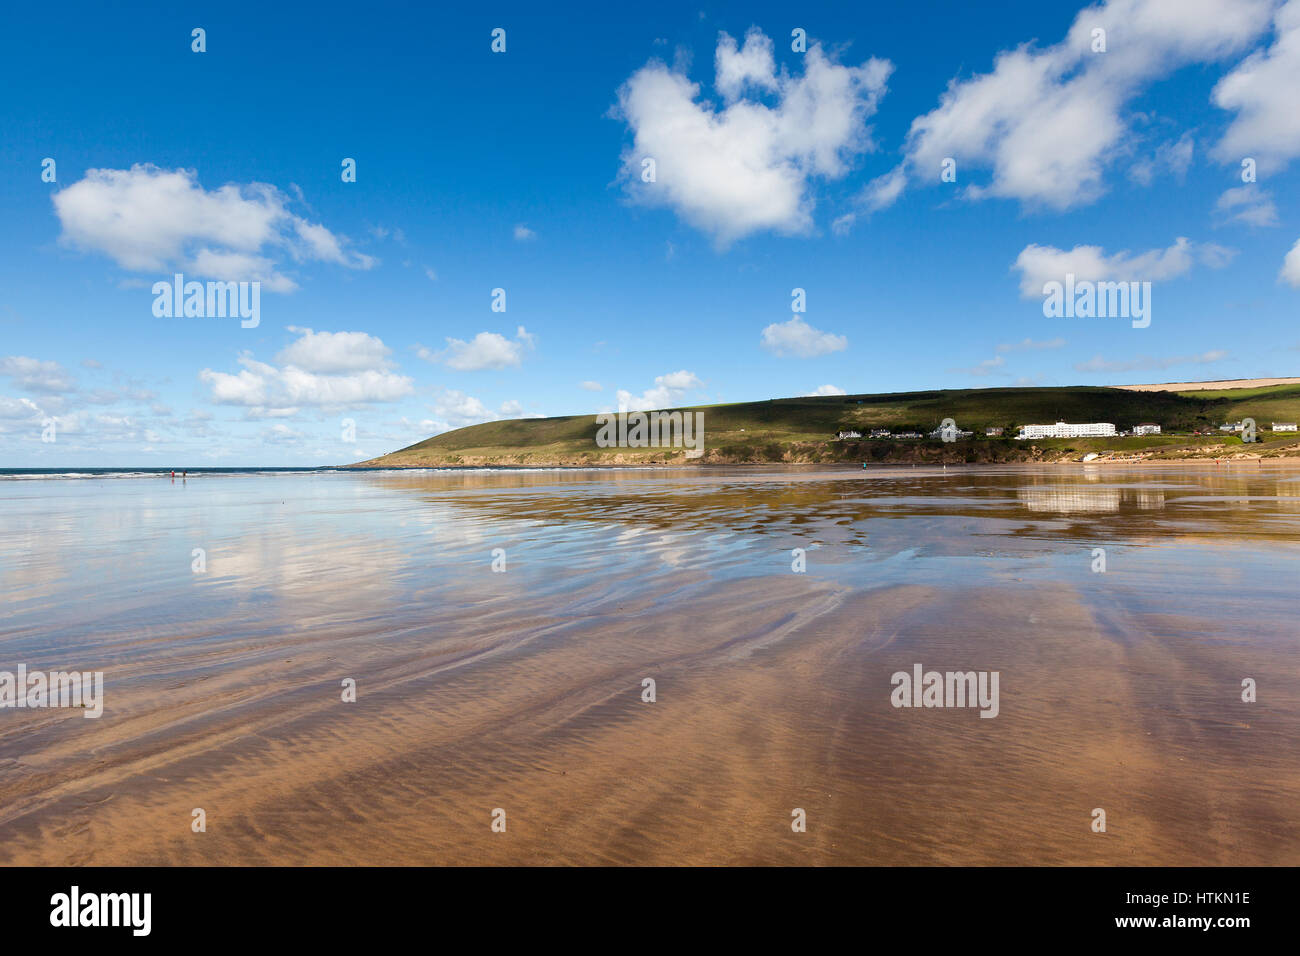 Vast stretch of sandy beach at Saunton Sands in North Devon, England, UK. Stock Photo